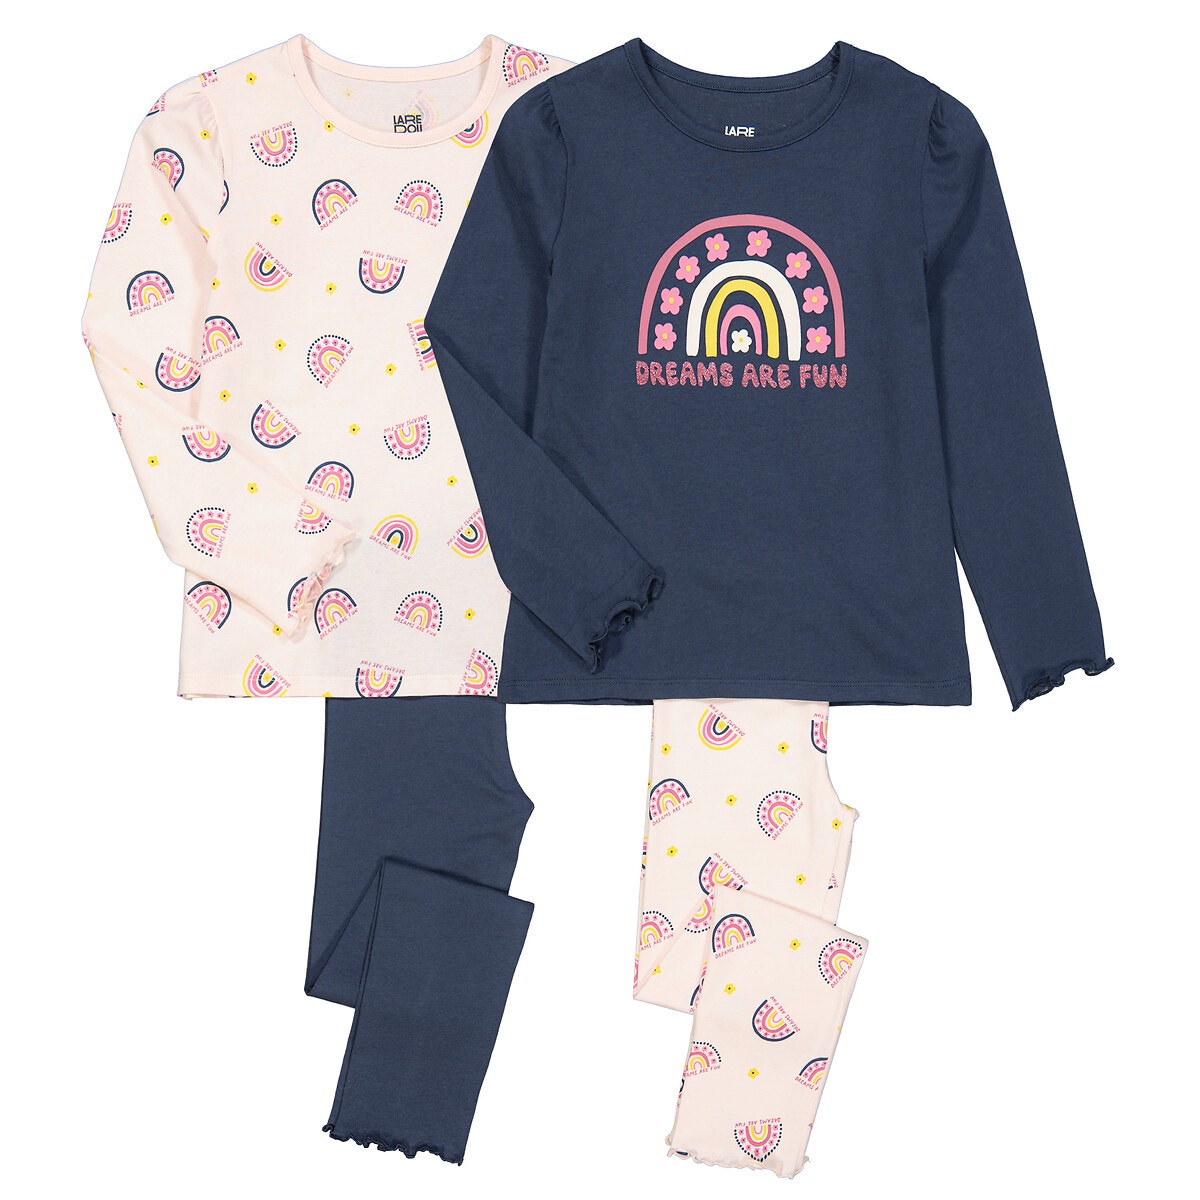 Μόδα > Παιδικά > Κορίτσι > Πιτζάμες, νυχτικά Σετ 2 πιτζάμες με σχέδιο ουράνιο τόξο